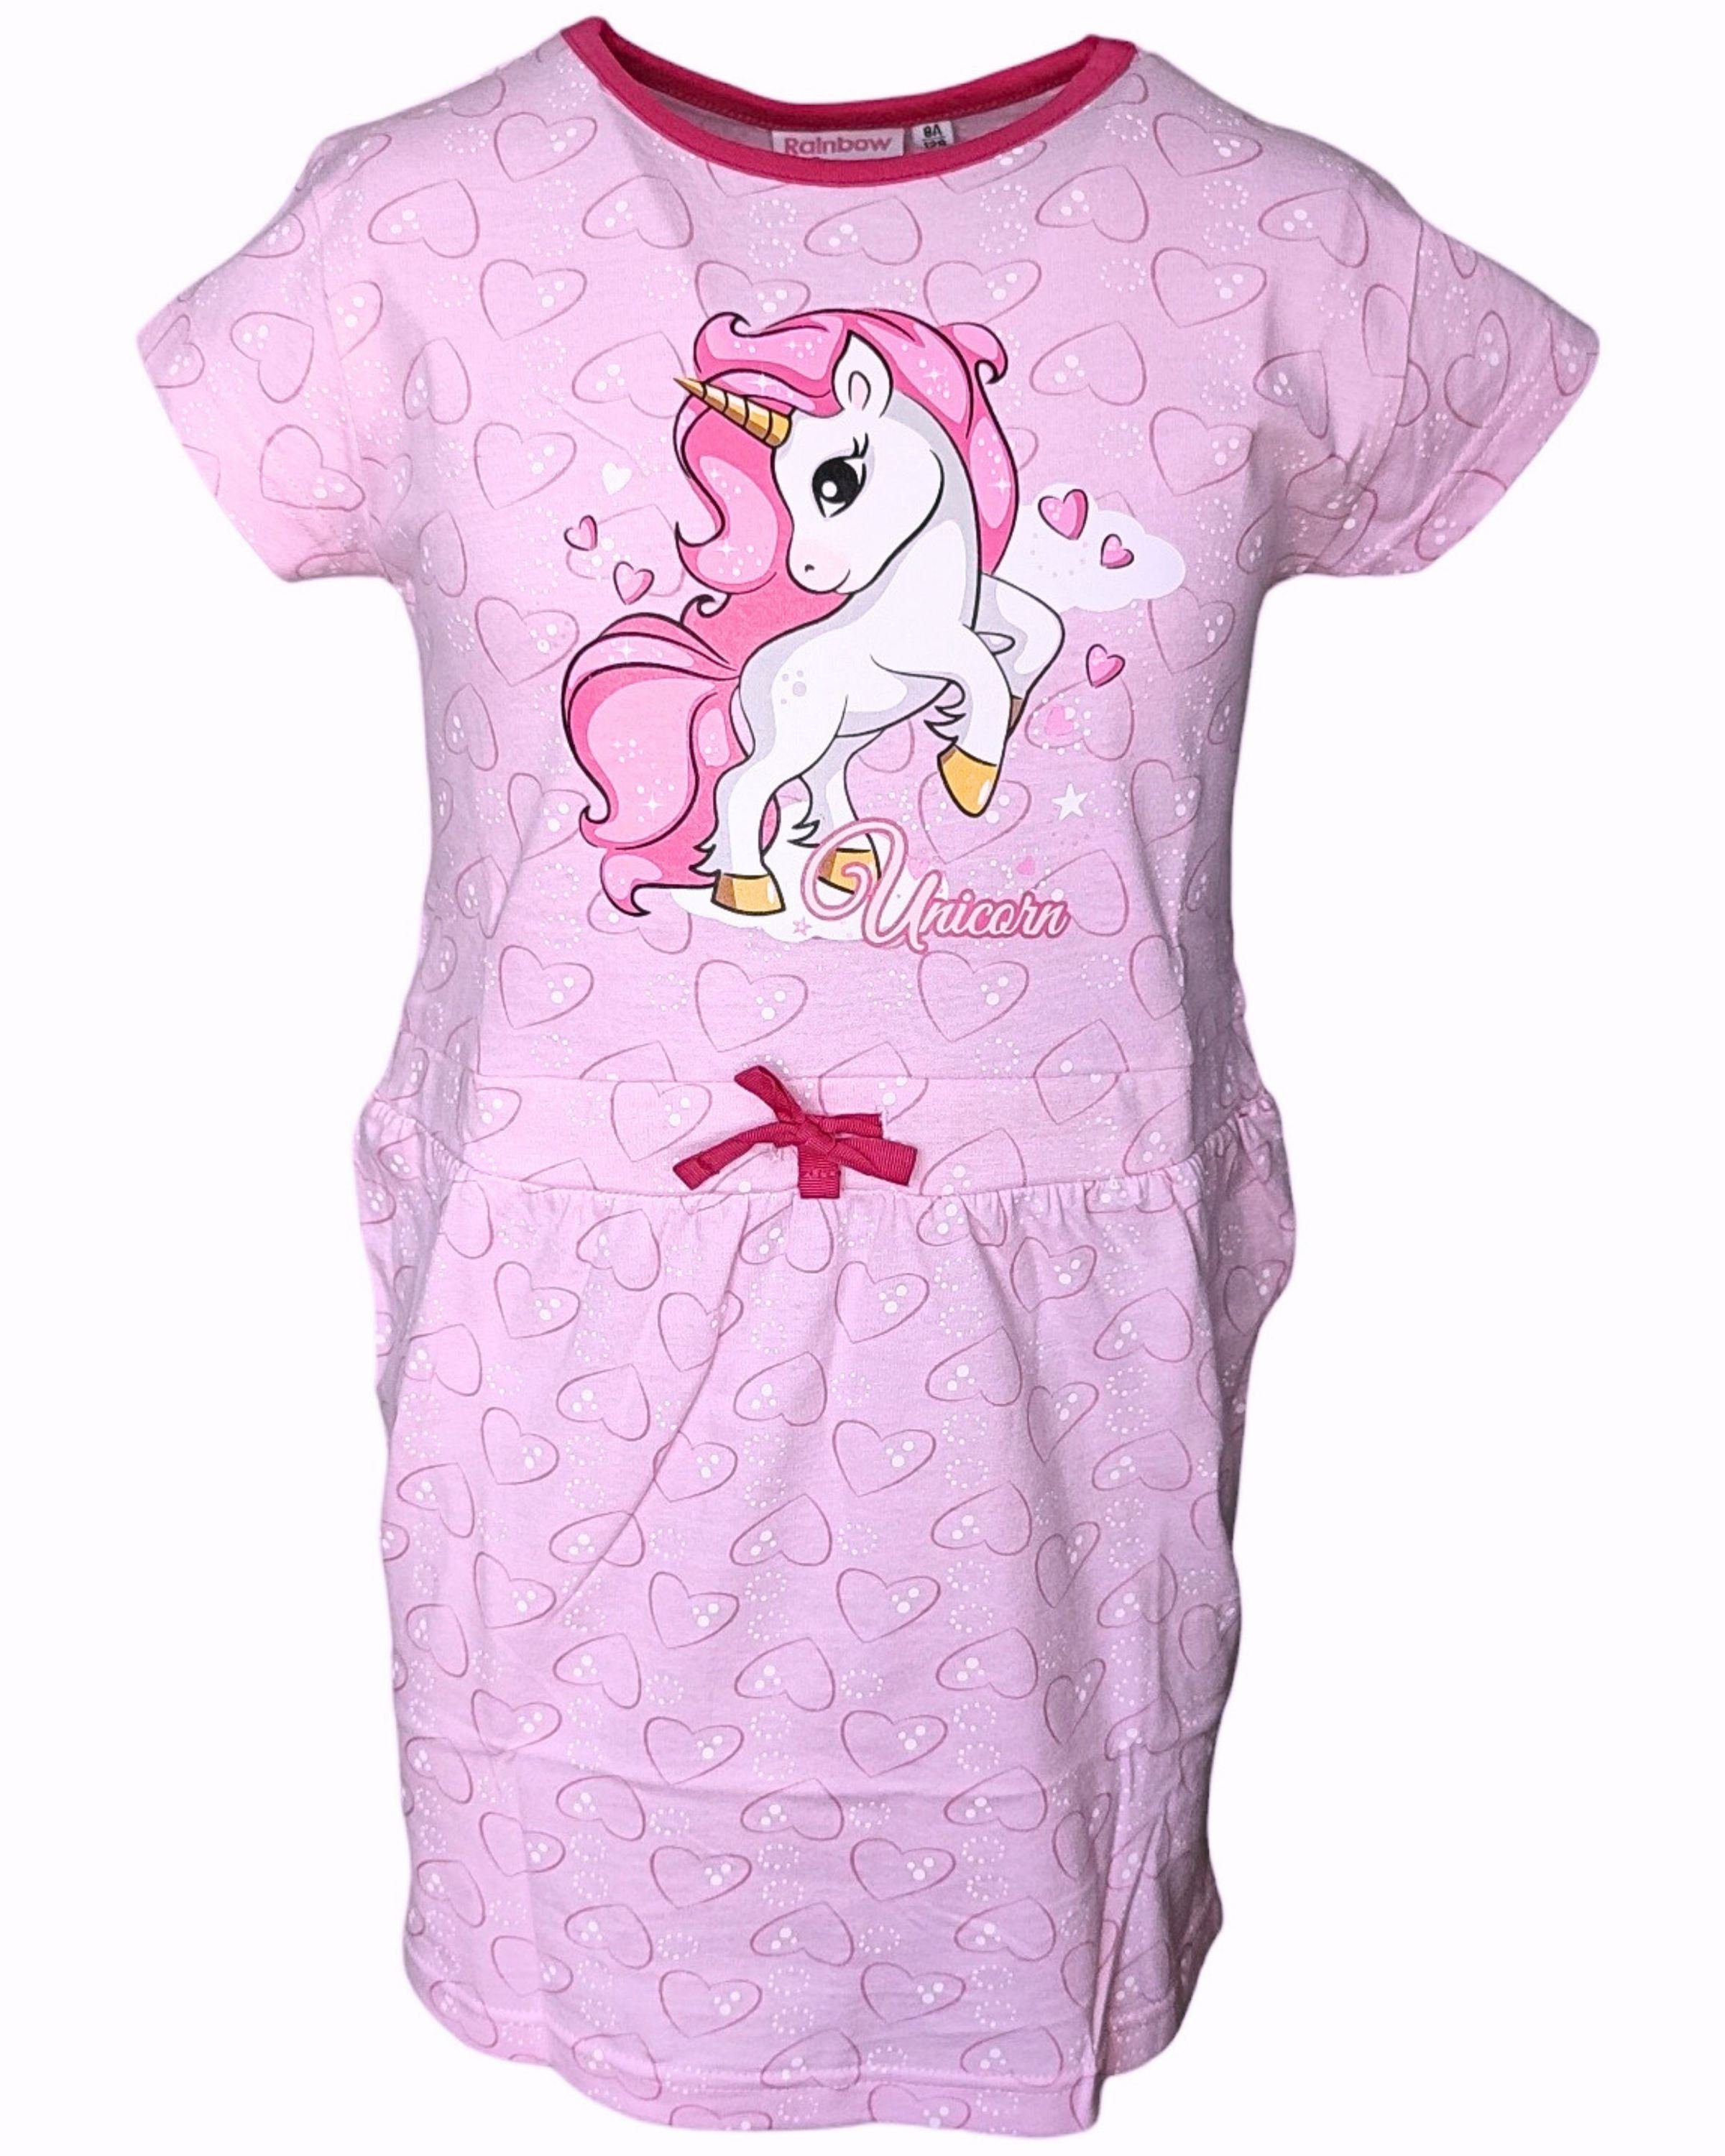 United Essentials Sommerkleid Einhorn Jerseykleid für Mädchen Gr. 98-128 cm Rosa | Sommerkleider